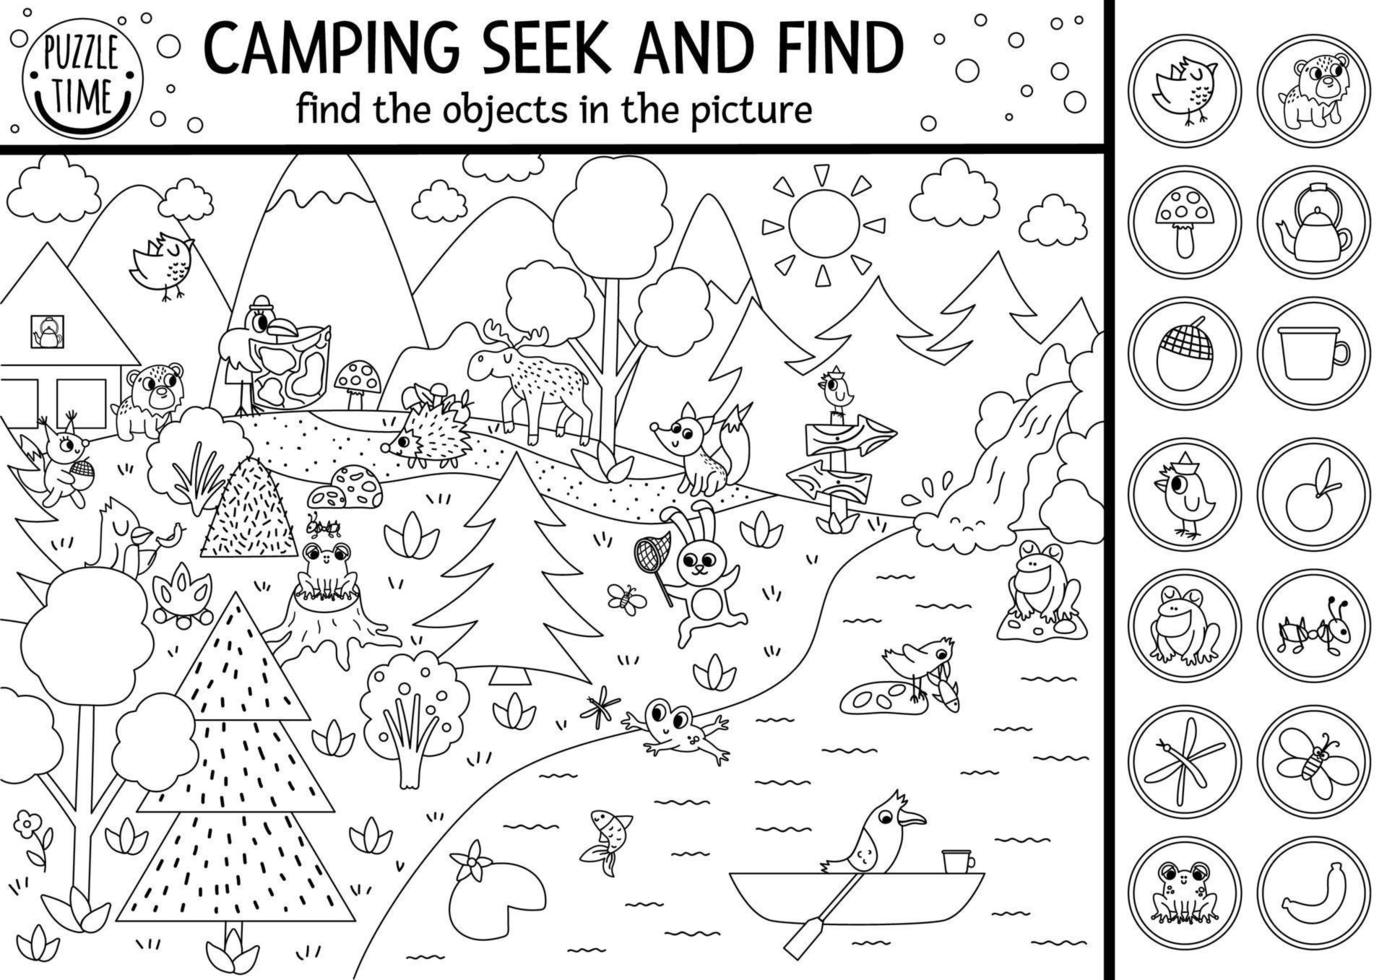 Vektor-Schwarz-Weiß-Camping-Suchspiel oder Malseite mit niedlichen Tieren im Wald. versteckte Objekte entdecken. Einfaches Suchen und Finden von Sommercamps oder druckbaren Aktivitäten im Wald vektor